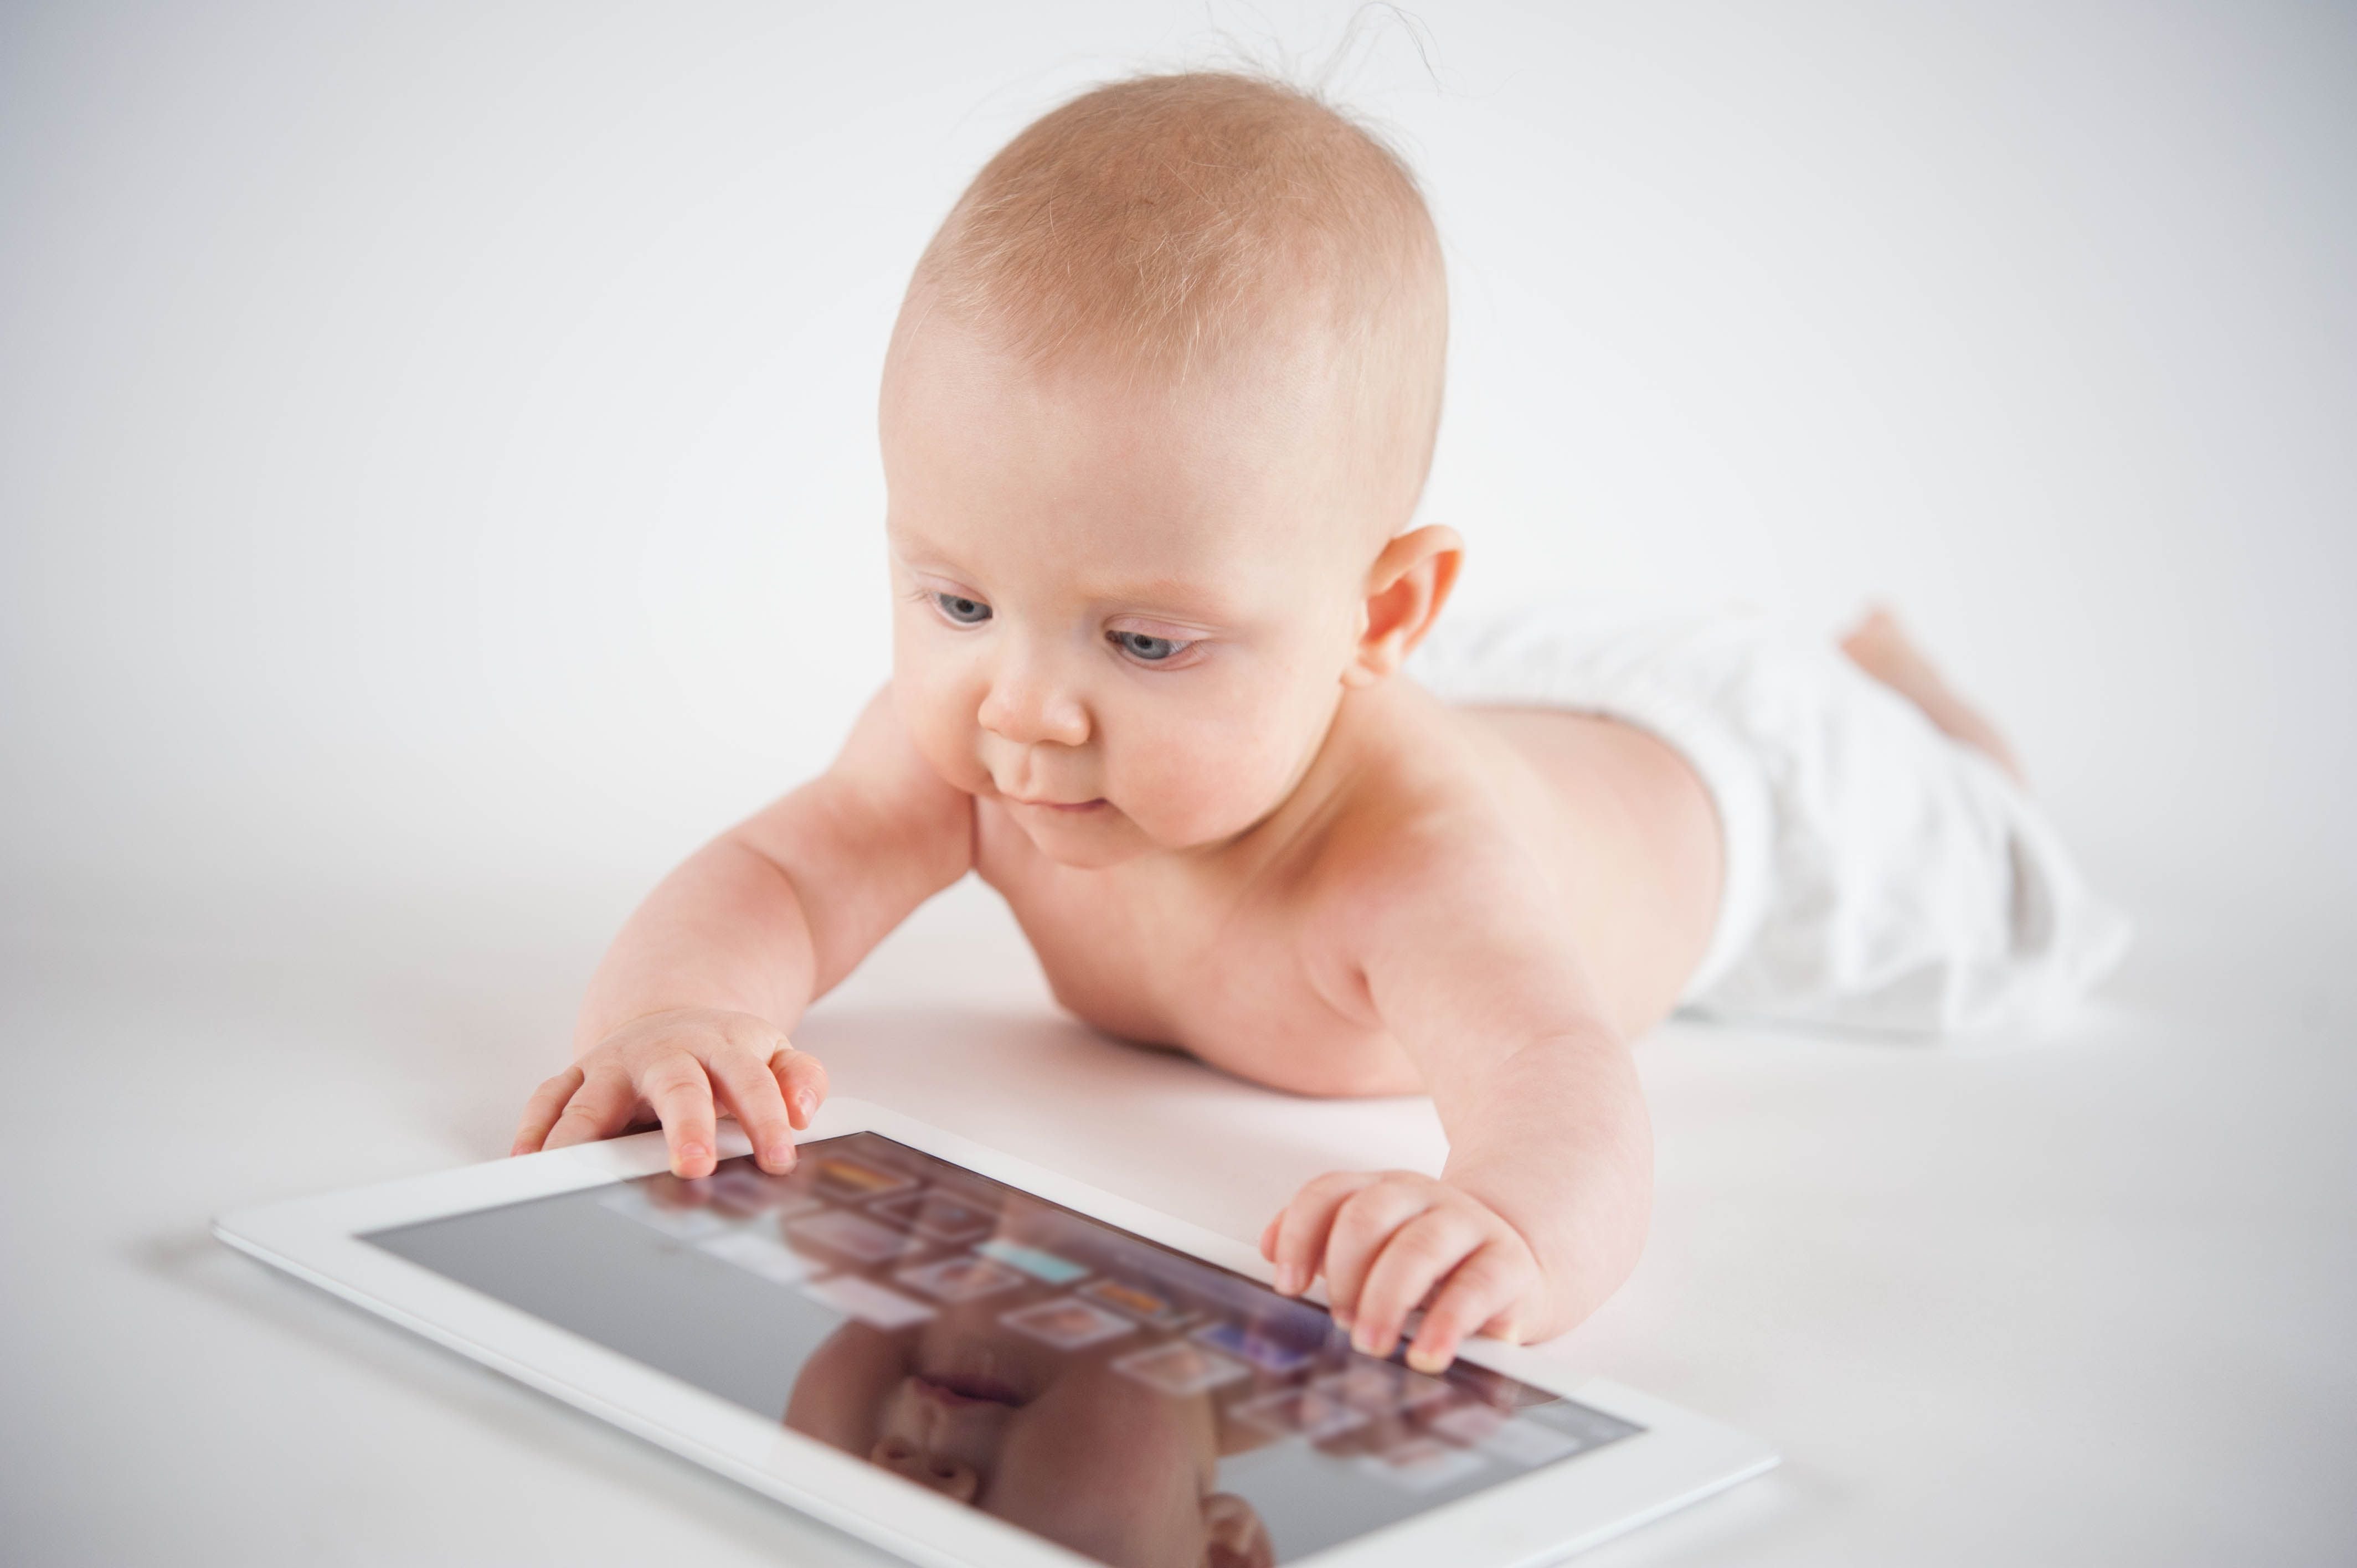 Entre más pequeño sea el niño, los padres deberían asegurarse que utilice las pantallas en la menor cantidad de tiempo posible, para que no desarrolle enfermedades o una adicción.